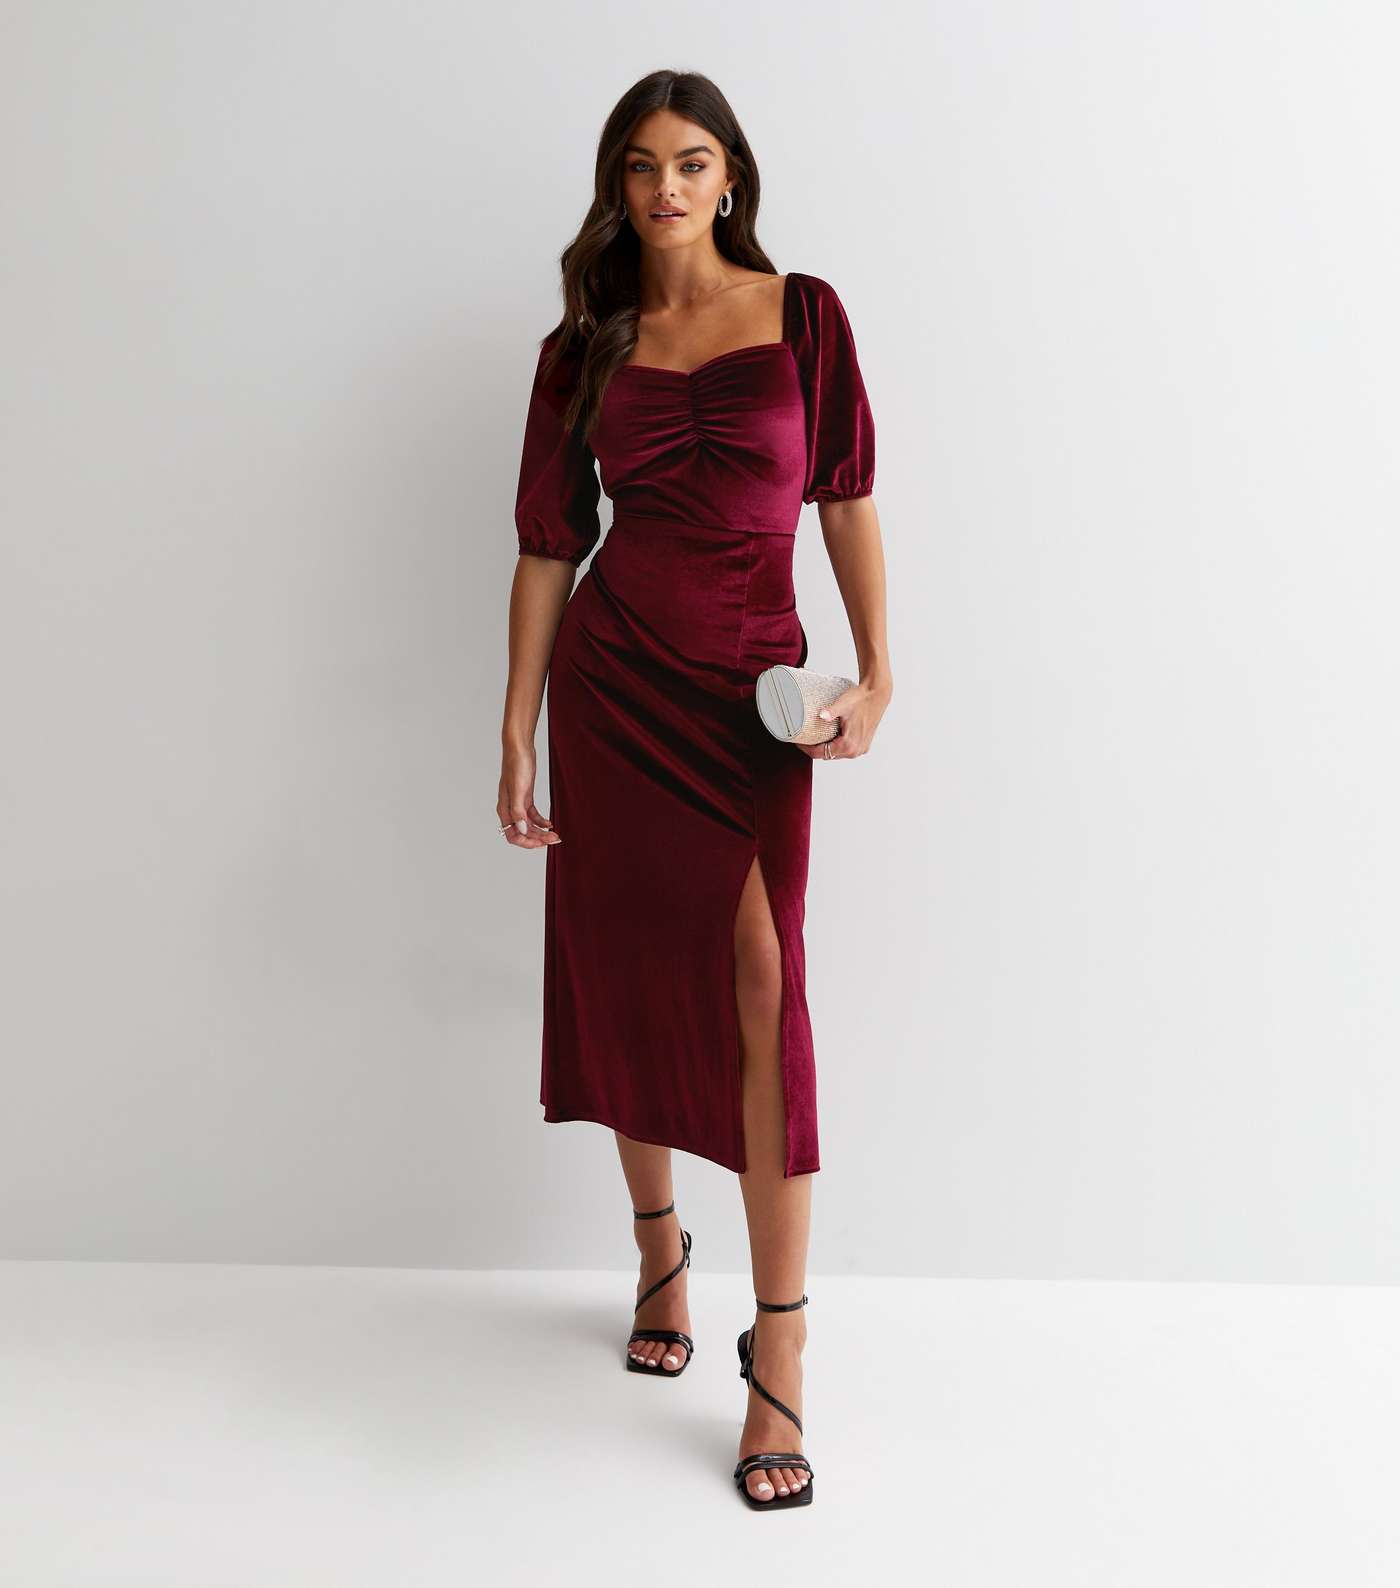 Gini London Burgundy Velvet Sweetheart Short Puff Sleeve Midi Dress Image 2